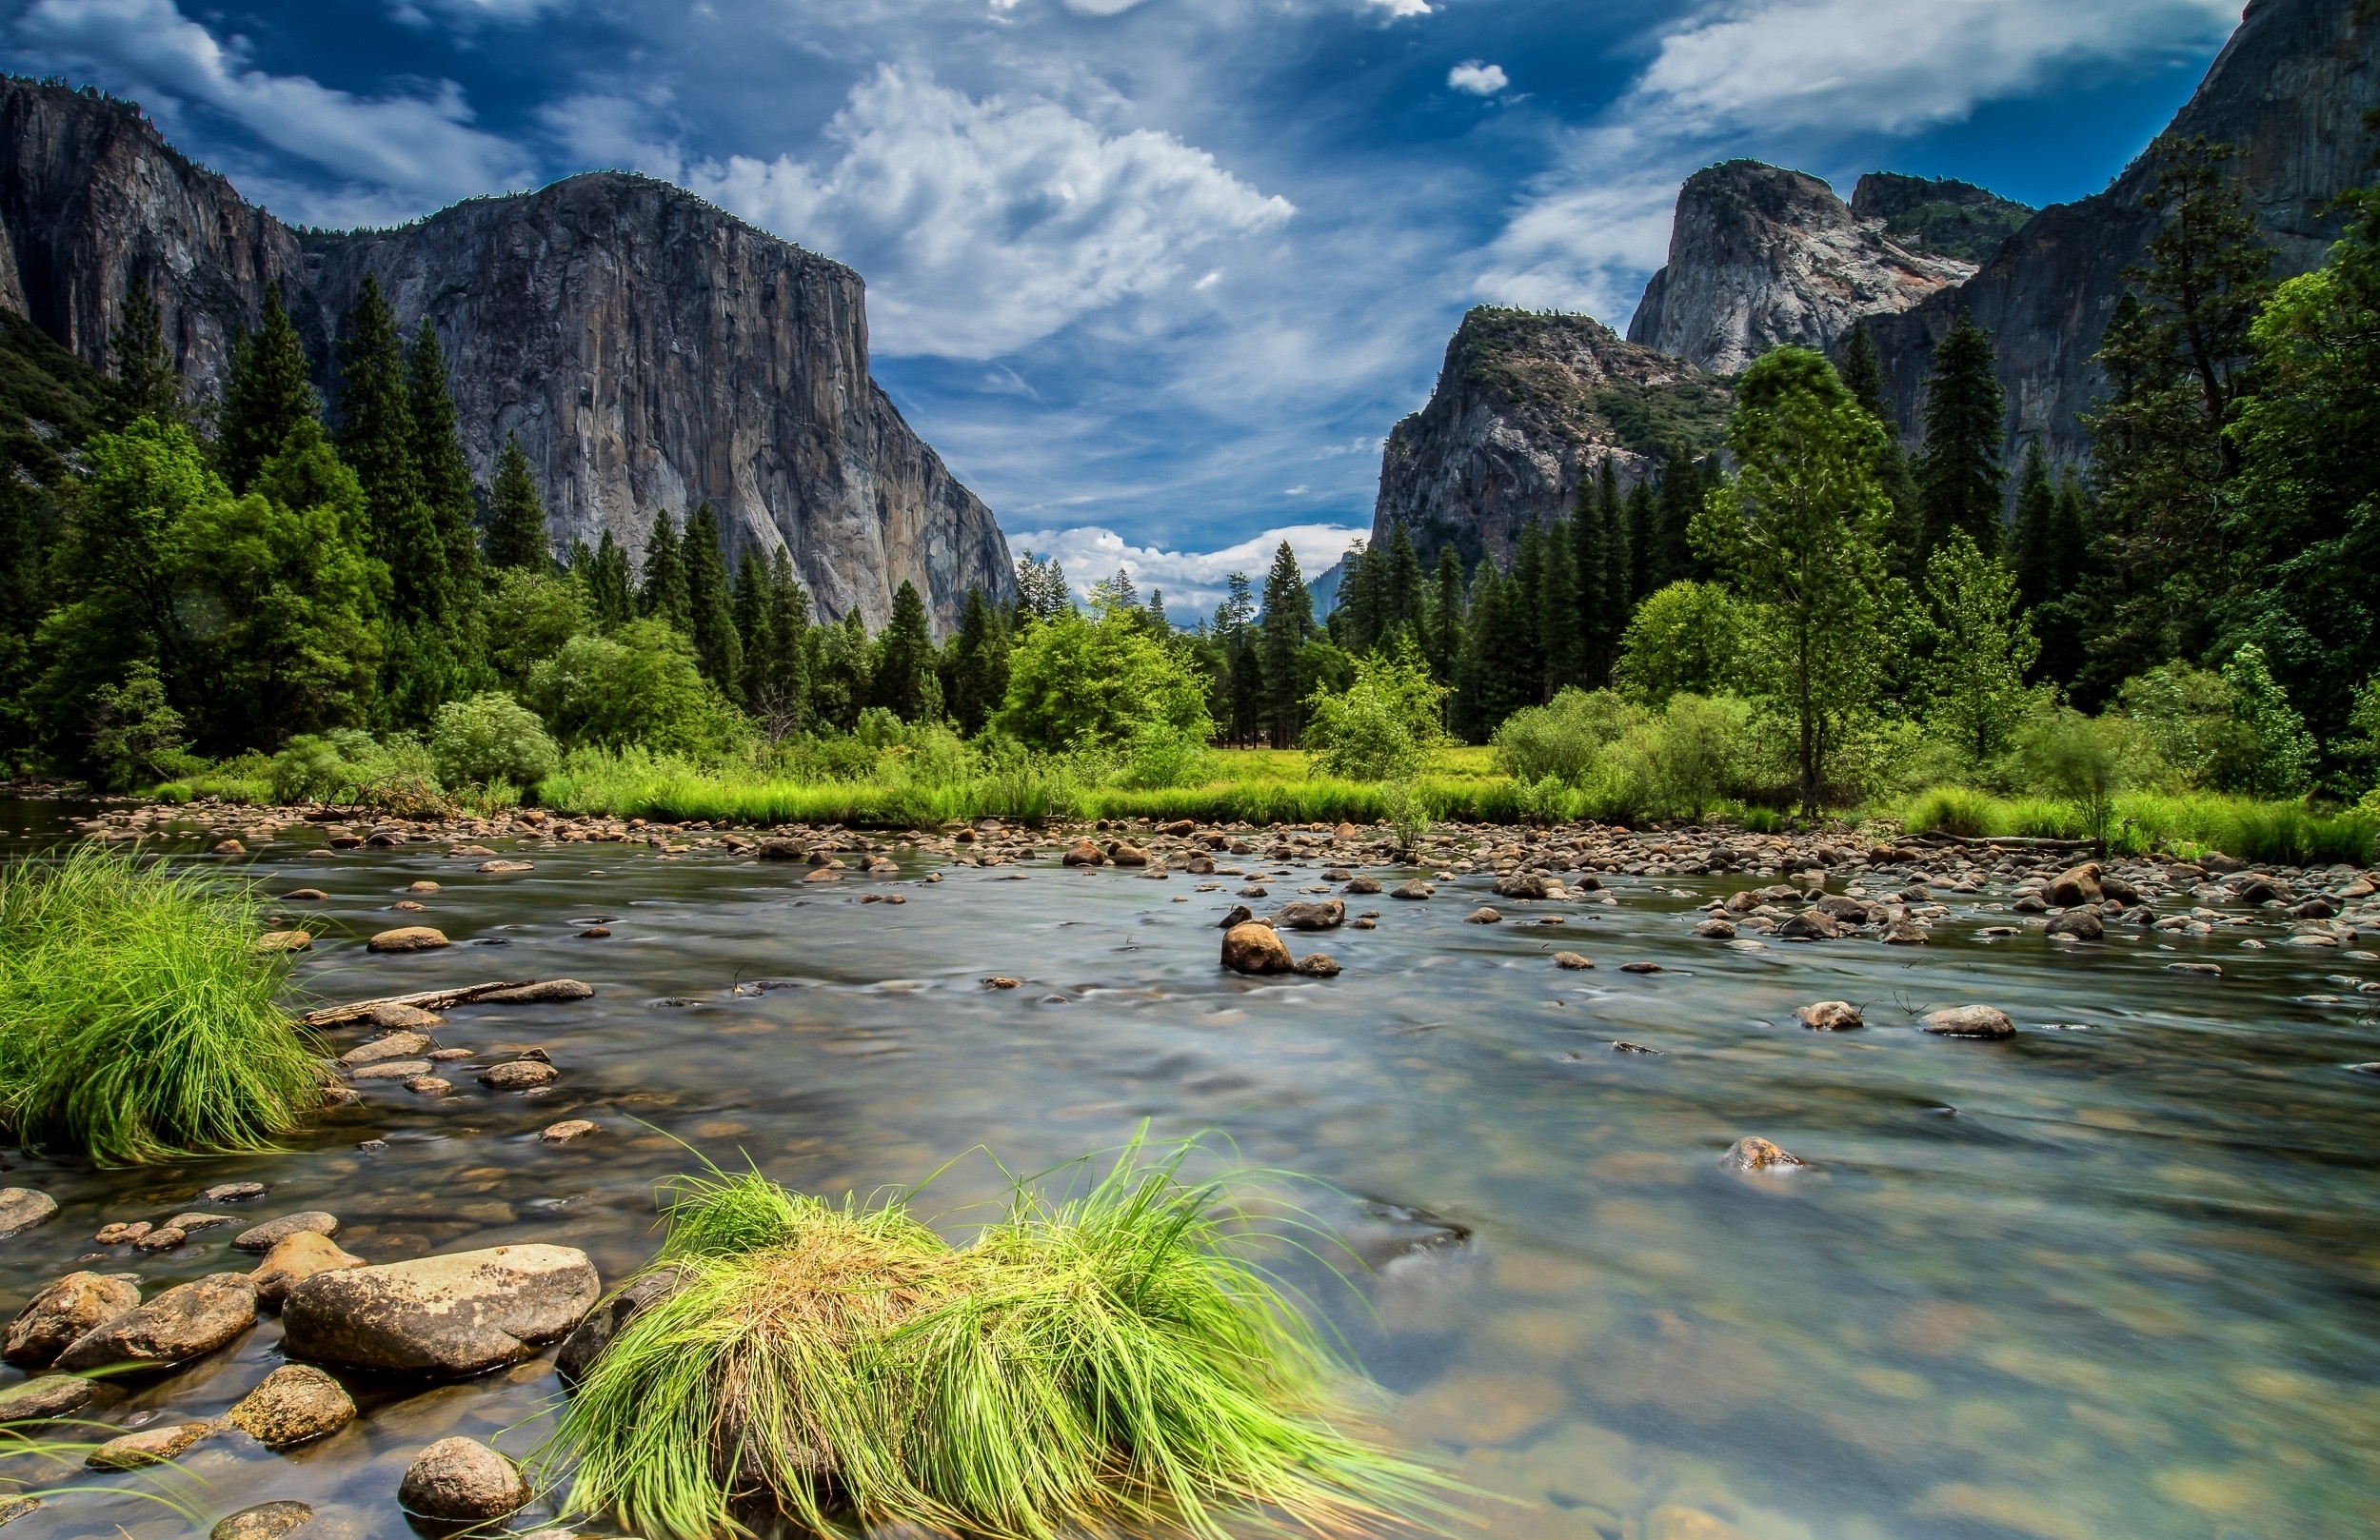 Популярные заставки и фоны Йосемитский Национальный Парк на компьютер